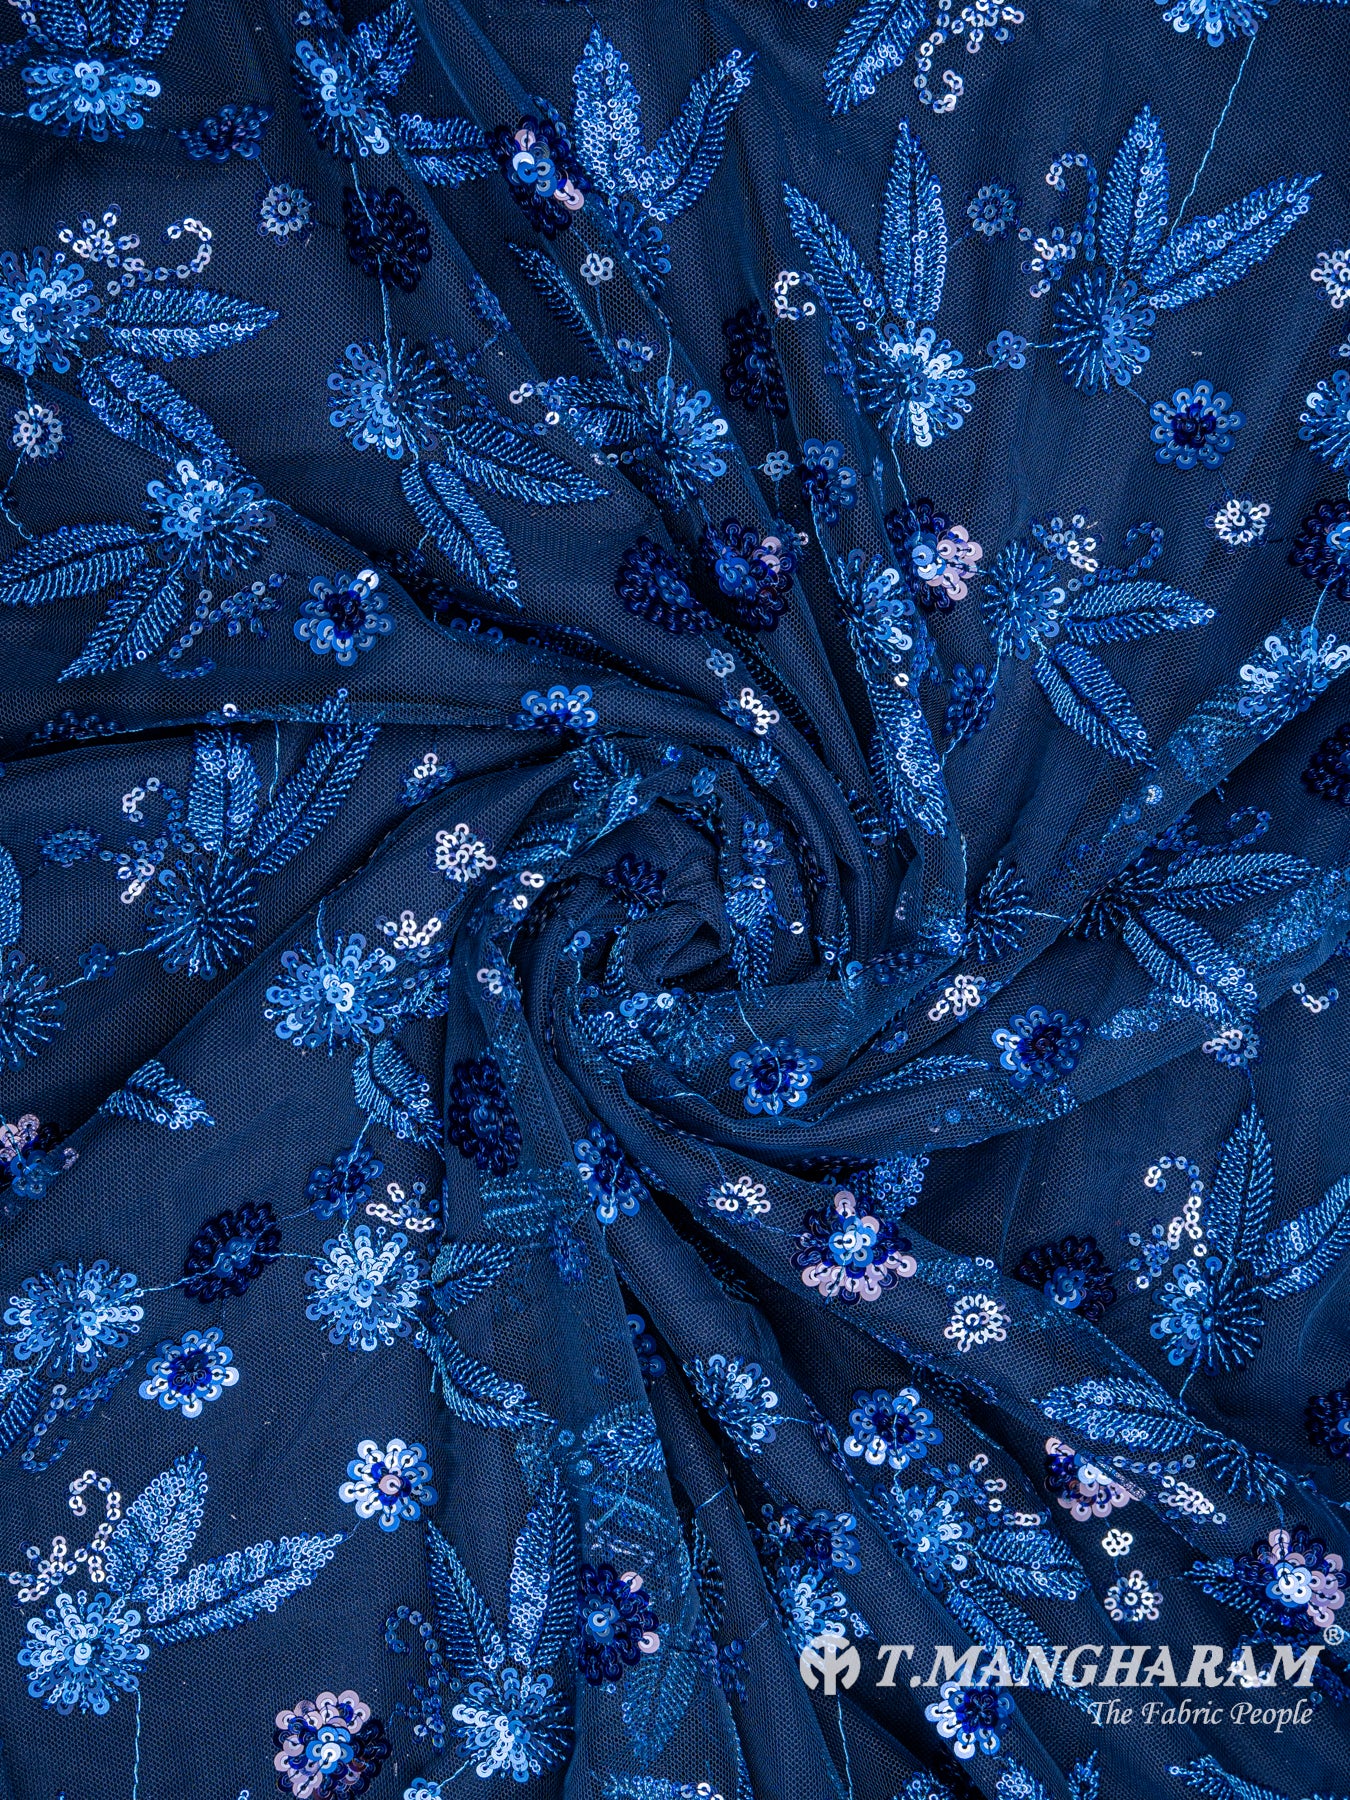 Blue Fancy Net Fabric - EB4334 view-1